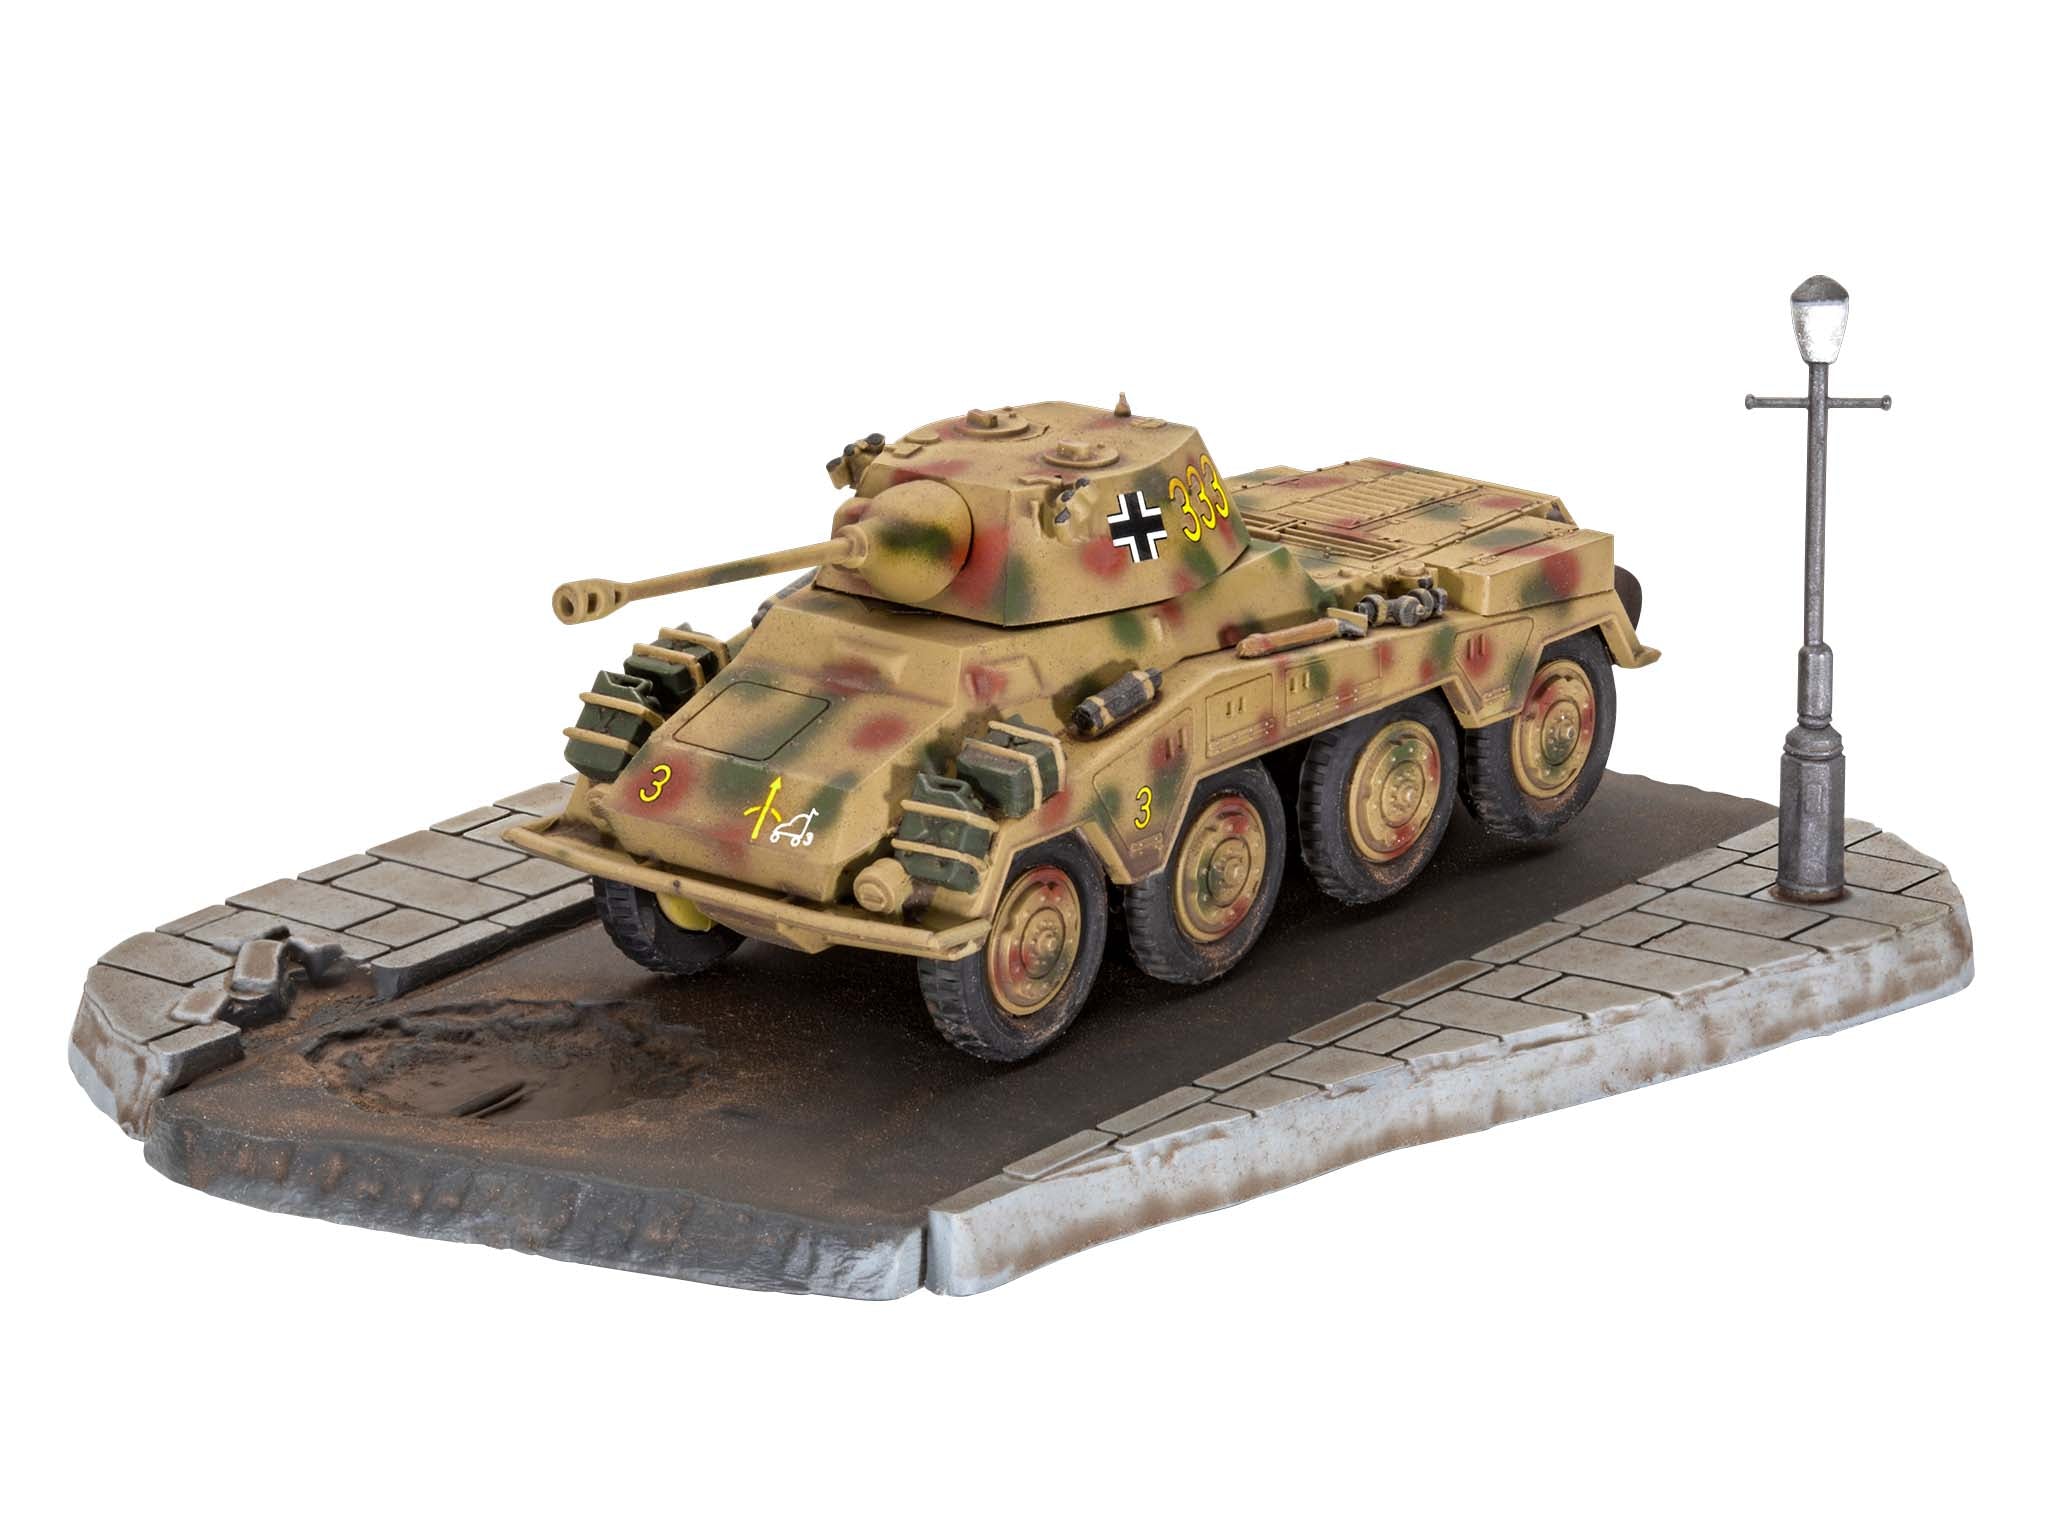 Revell Sd.Kfz. 234/2 Puma 1:76 First Diorama Set Tank Model Kit